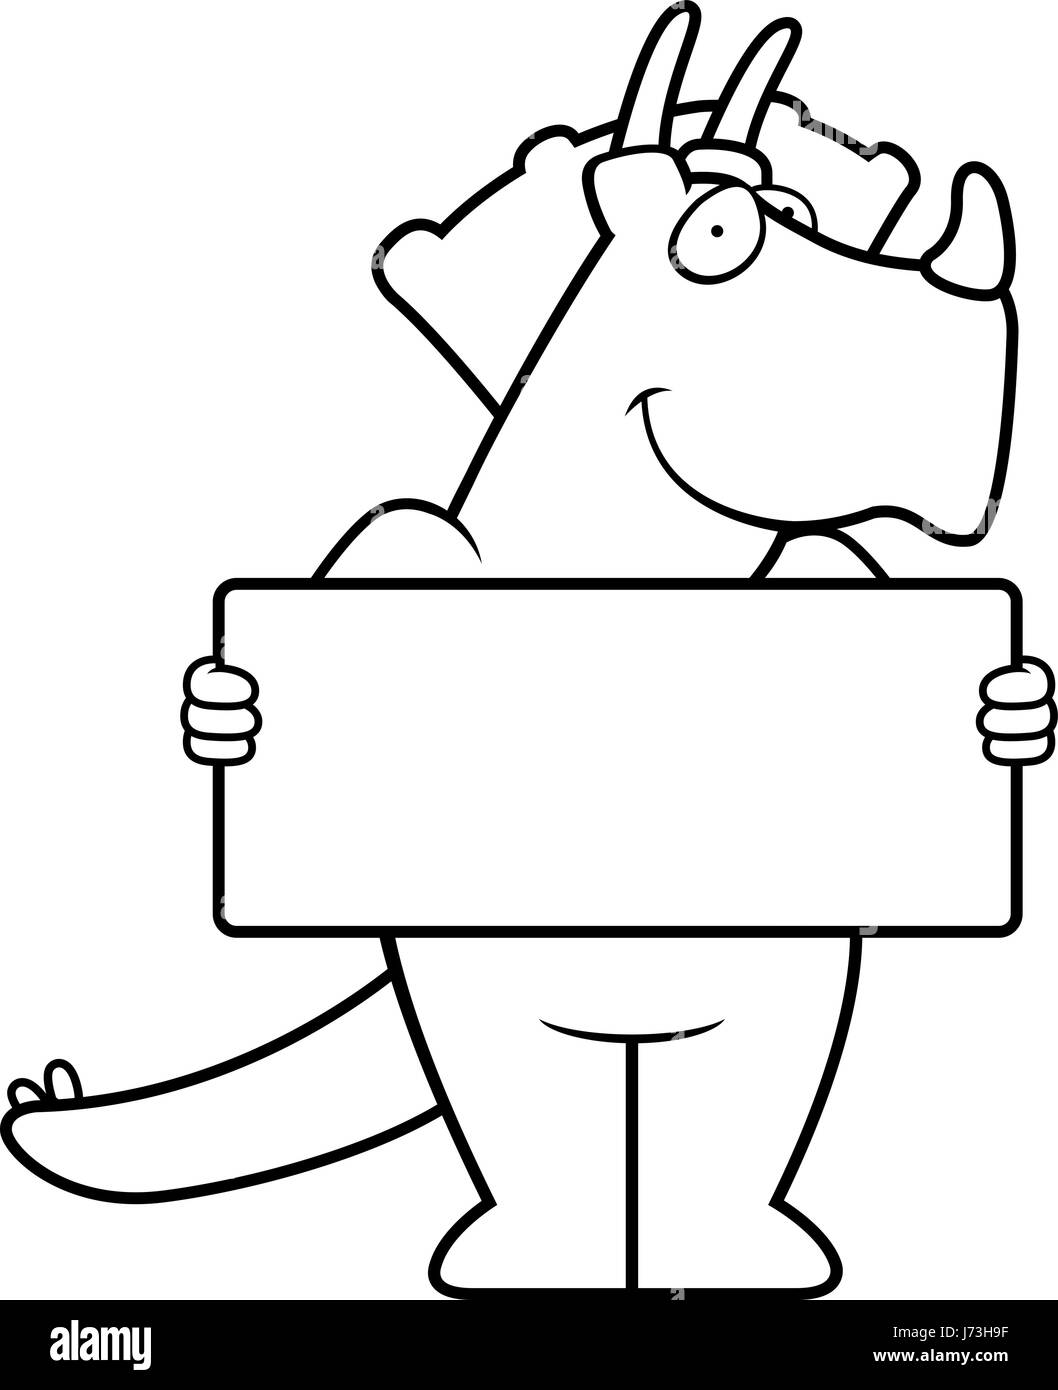 A happy cartoon dinosaur with a sign. Stock Vector